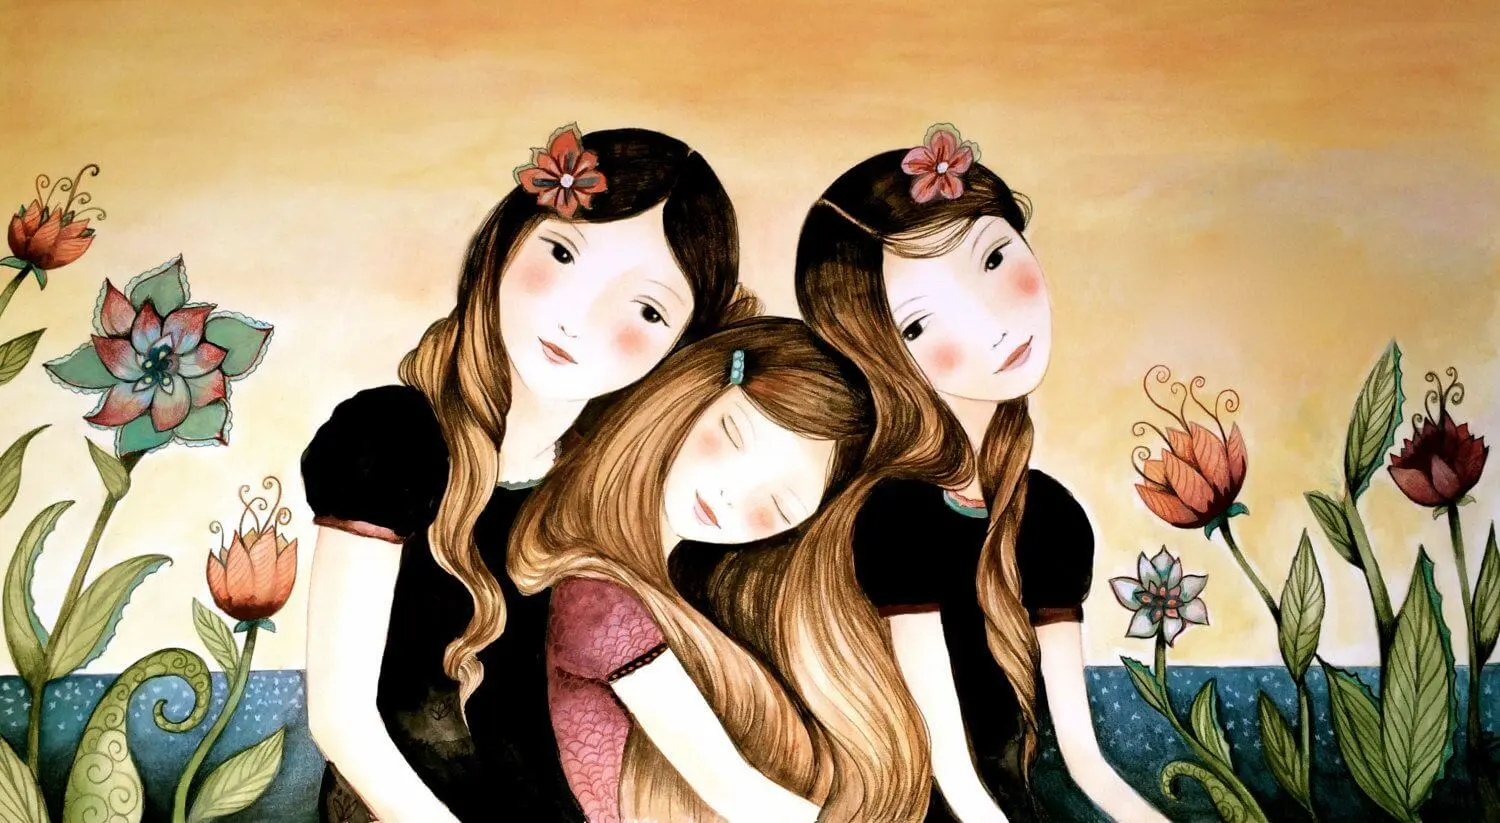 ilustração da história - Ainda existe esperança - 3 meninas juntas